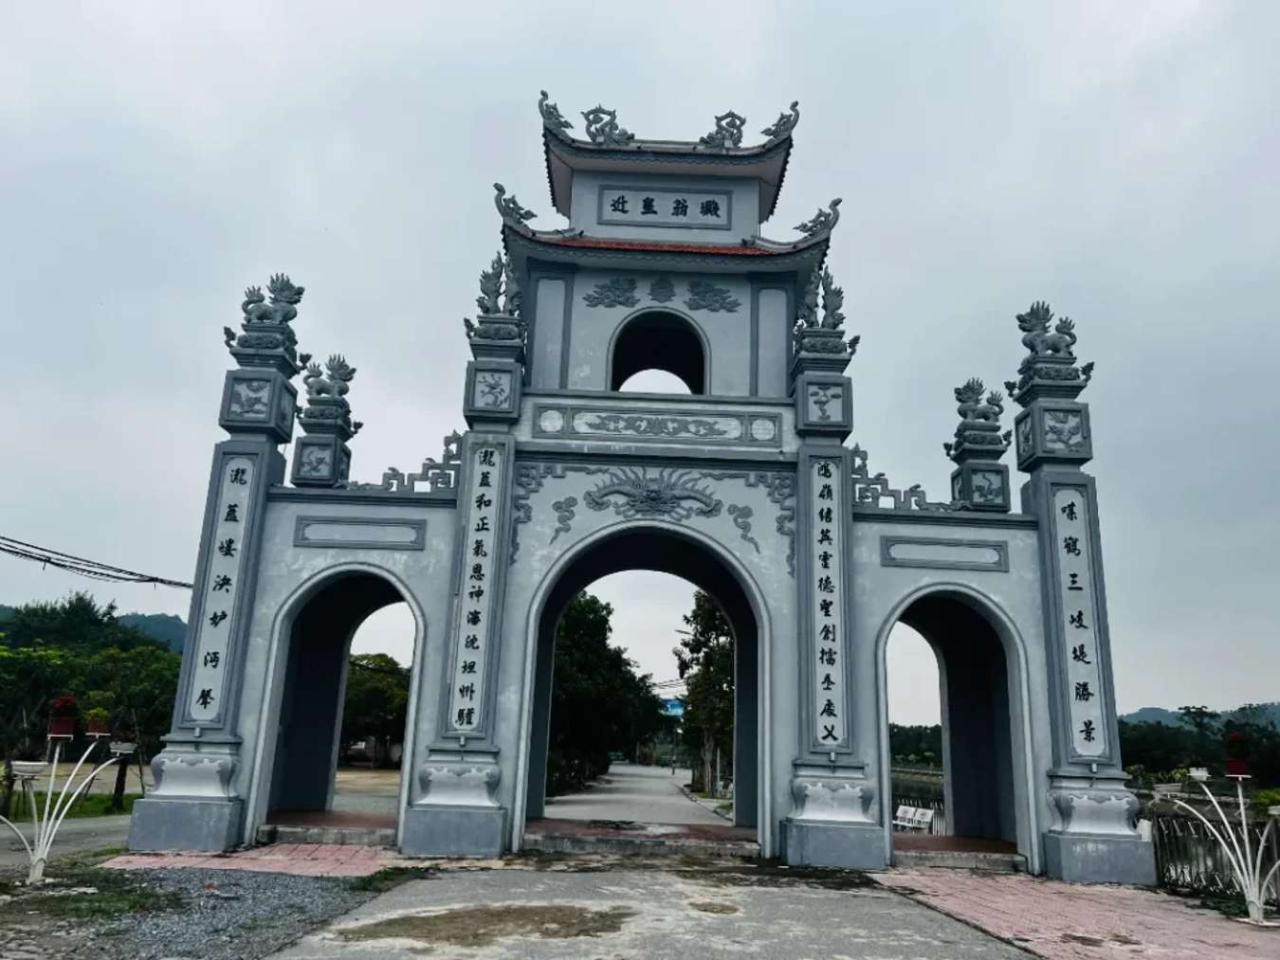 Cận cảnh cổng chính để đi vào khuôn viên đền Quan Hoàng Mười - Nghệ An